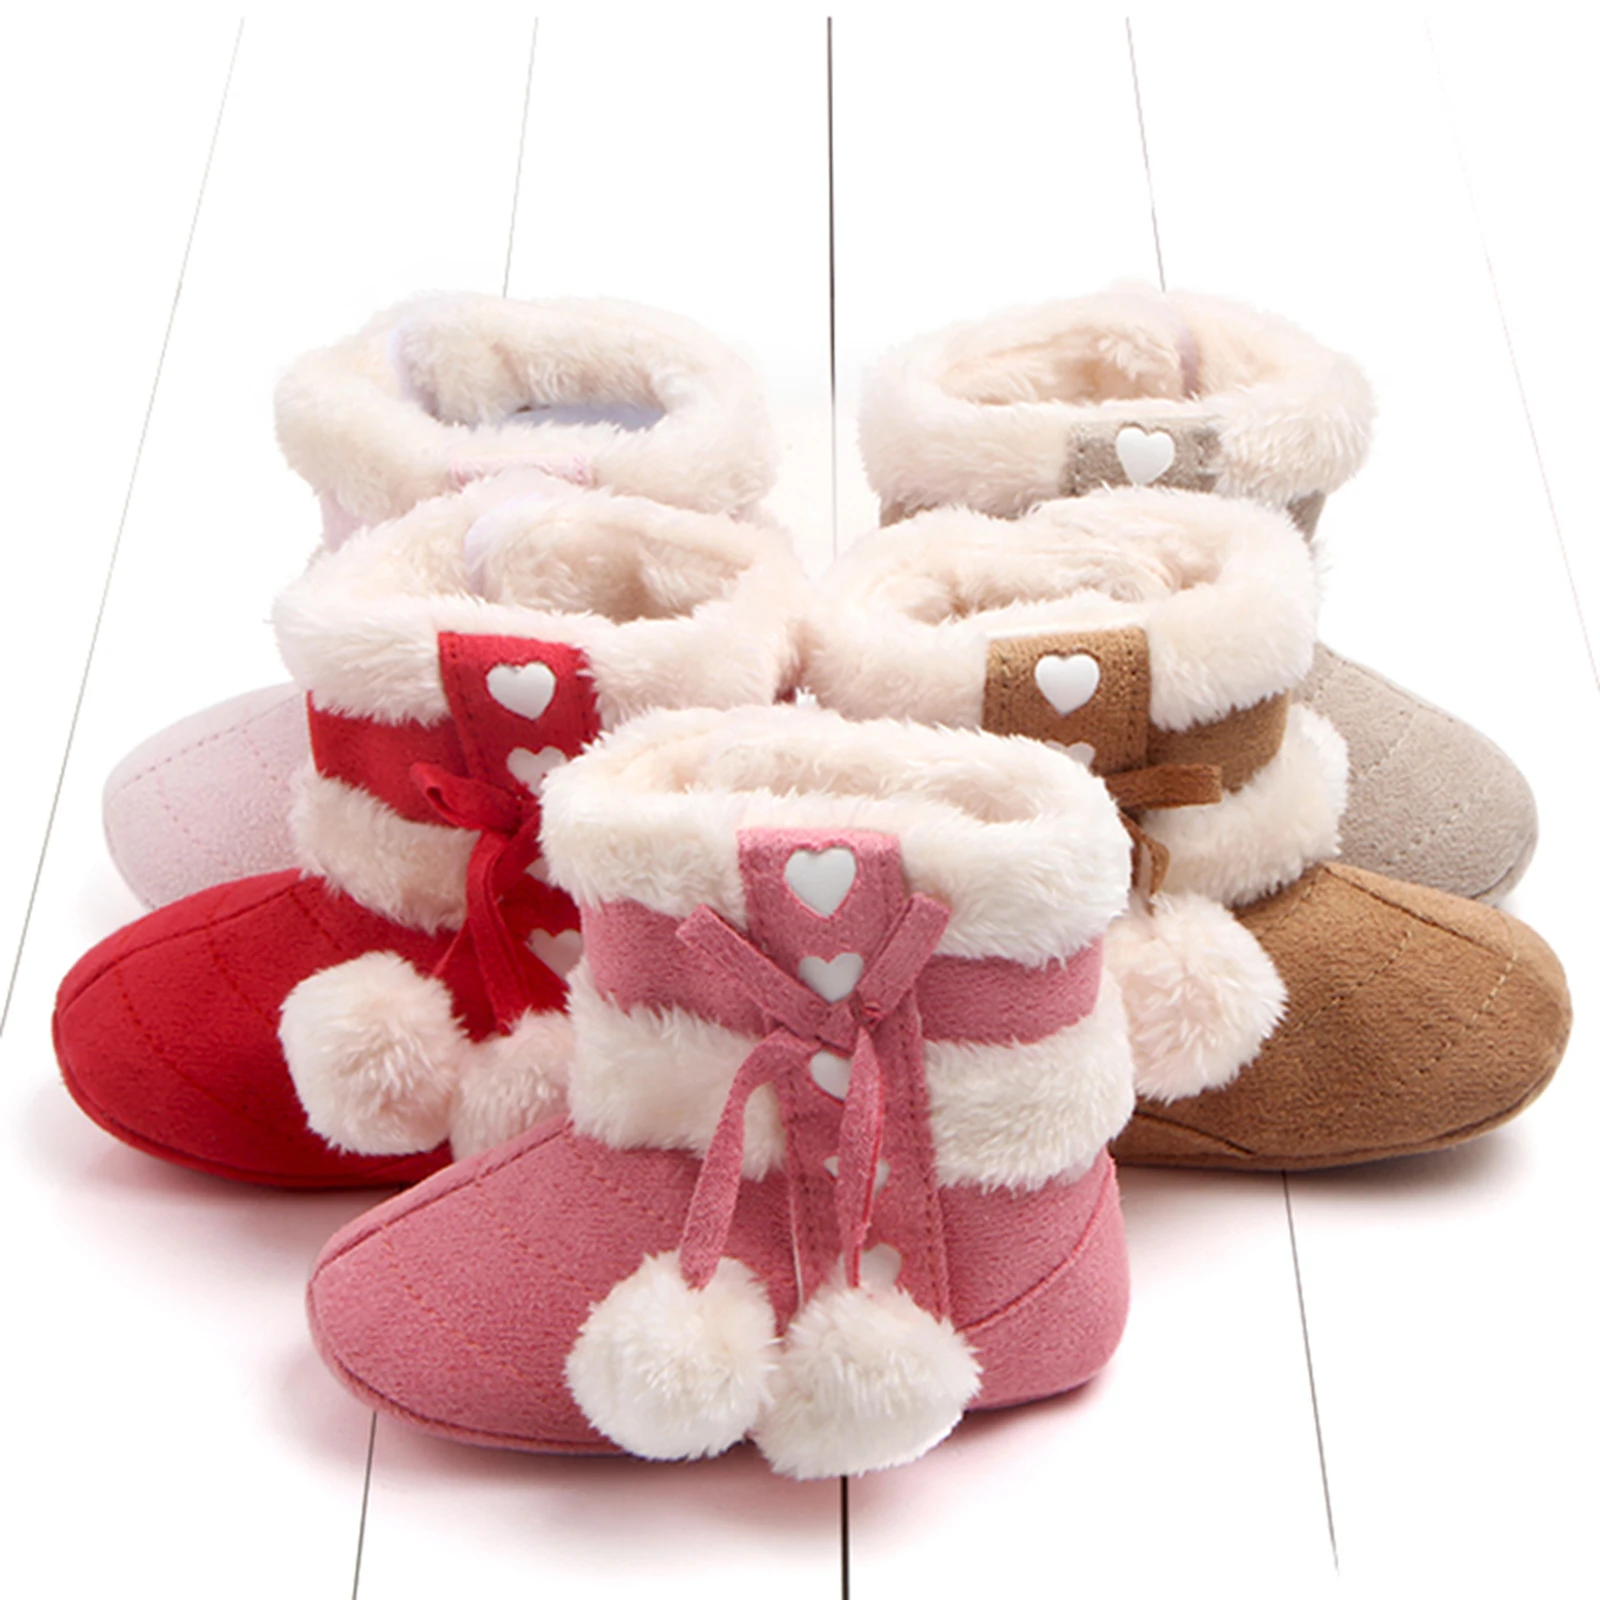 女の赤ちゃんのための弓付きのかわいいブーツ,幼児のための暖かい赤ちゃんの靴